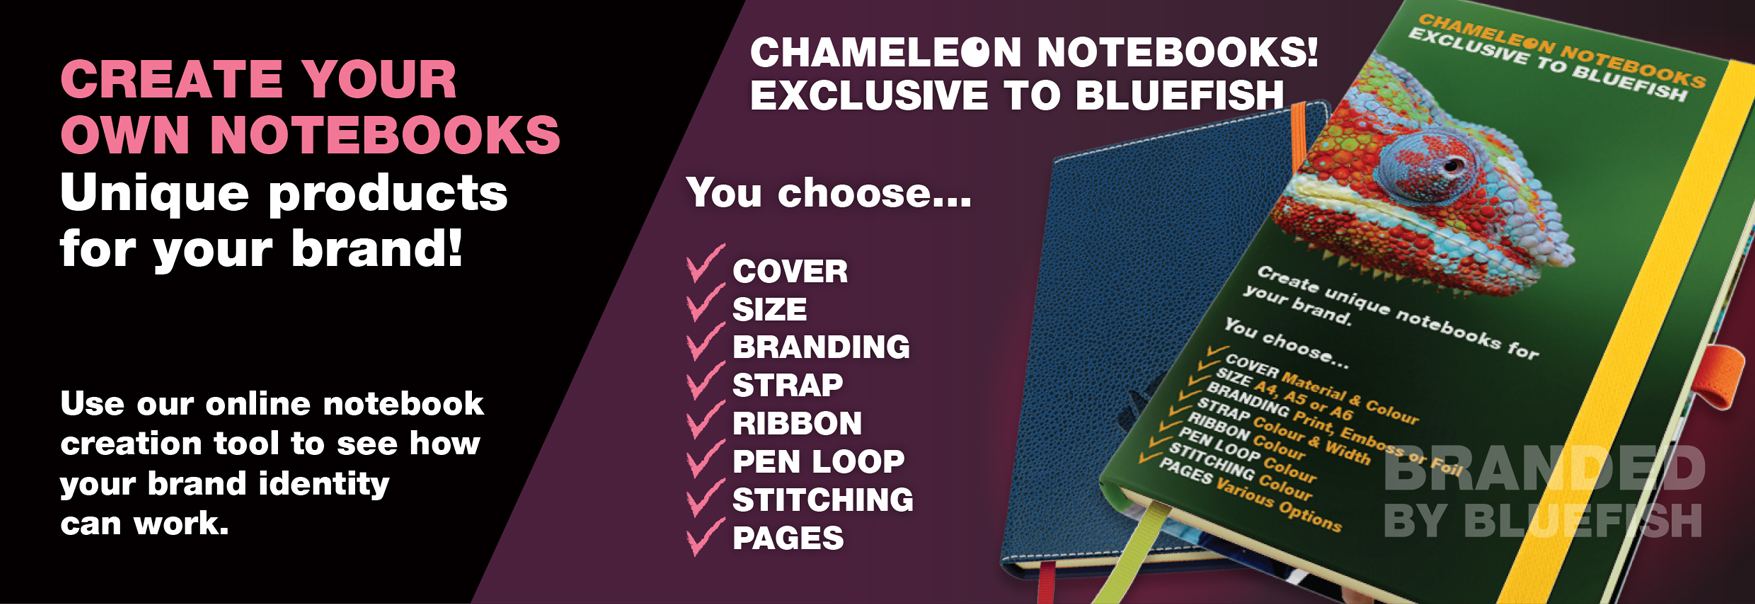 Chameleon Notebooks